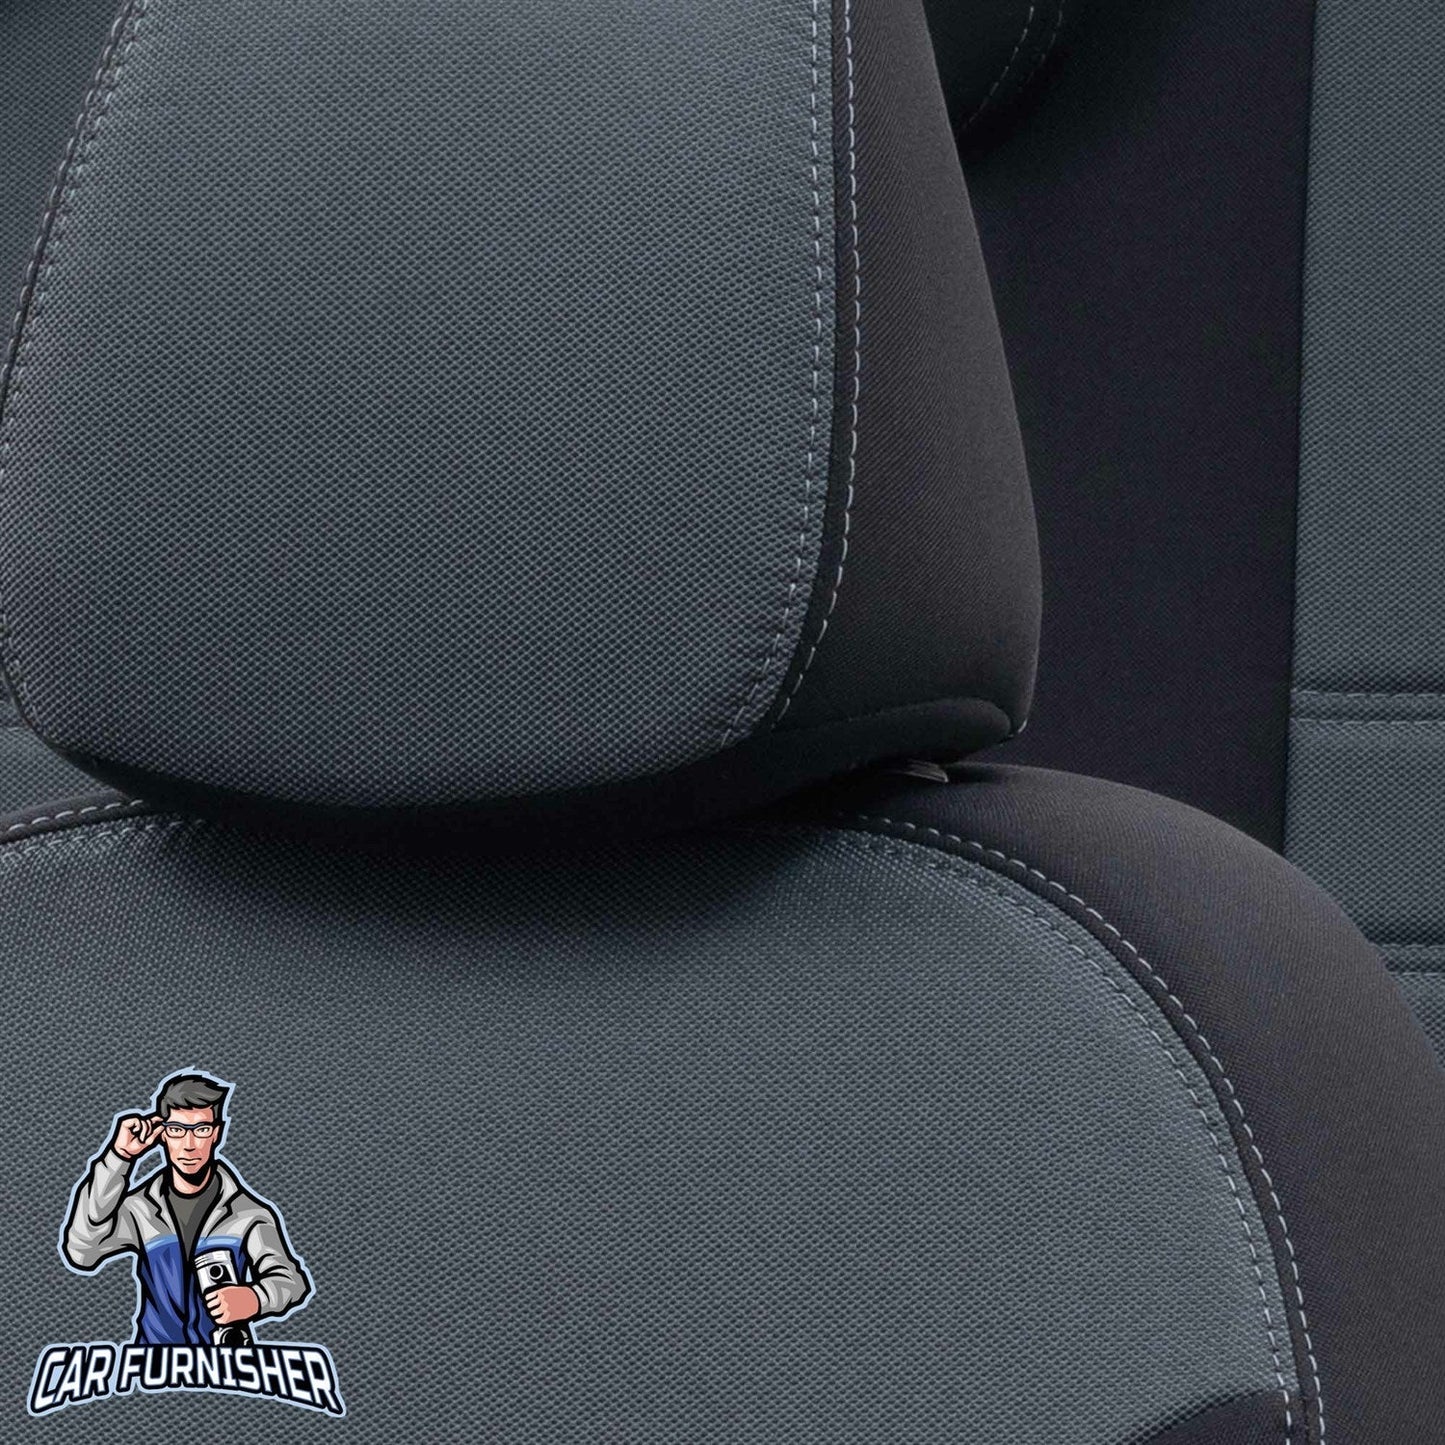 Chery Alia Seat Covers Original Jacquard Design Smoked Black Jacquard Fabric